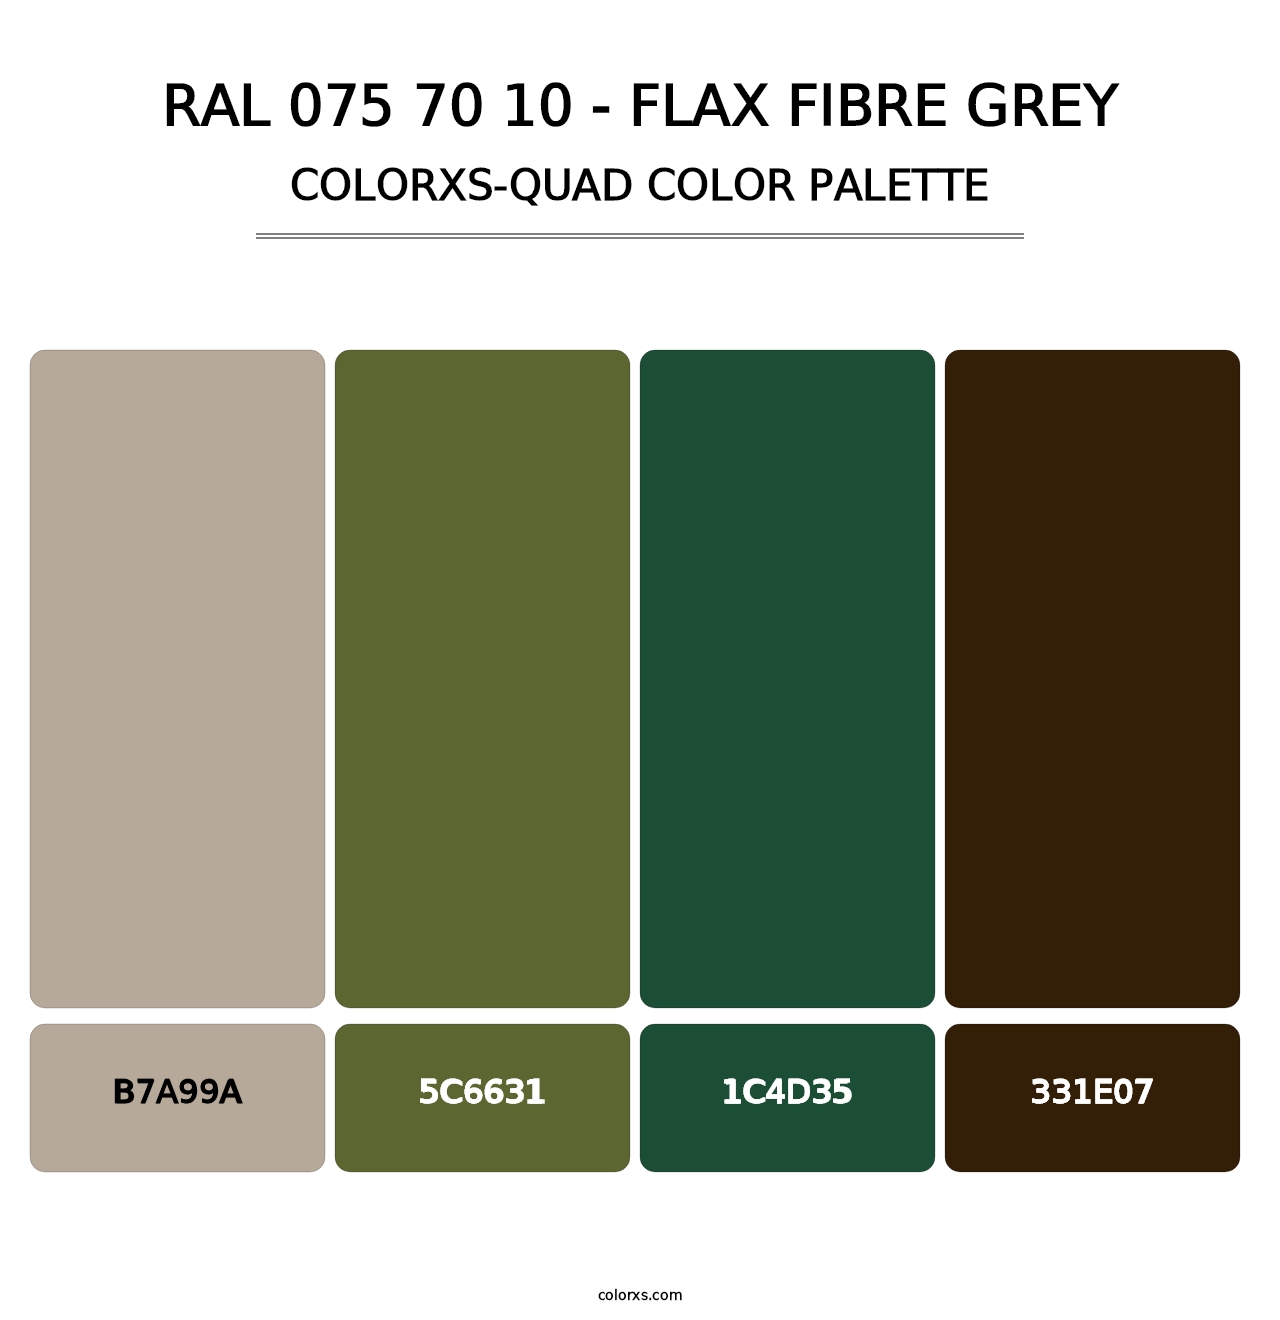 RAL 075 70 10 - Flax Fibre Grey - Colorxs Quad Palette